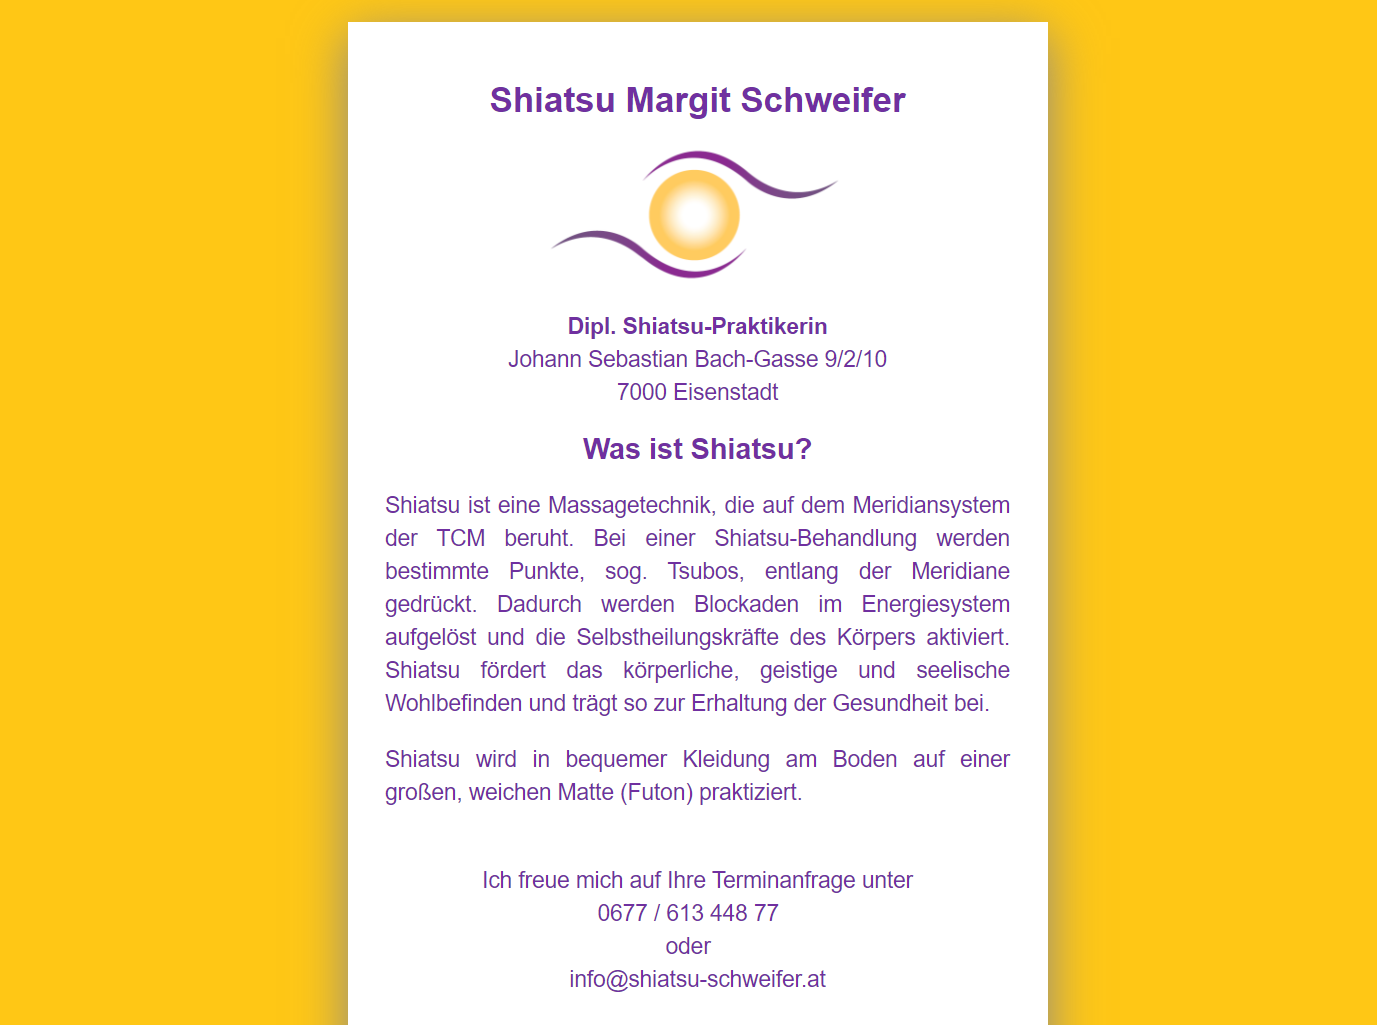 elektronische Visitenkarte von Shiatsu Margit Schweifer - erstellt von CSMB e.U. Martin Böhm 